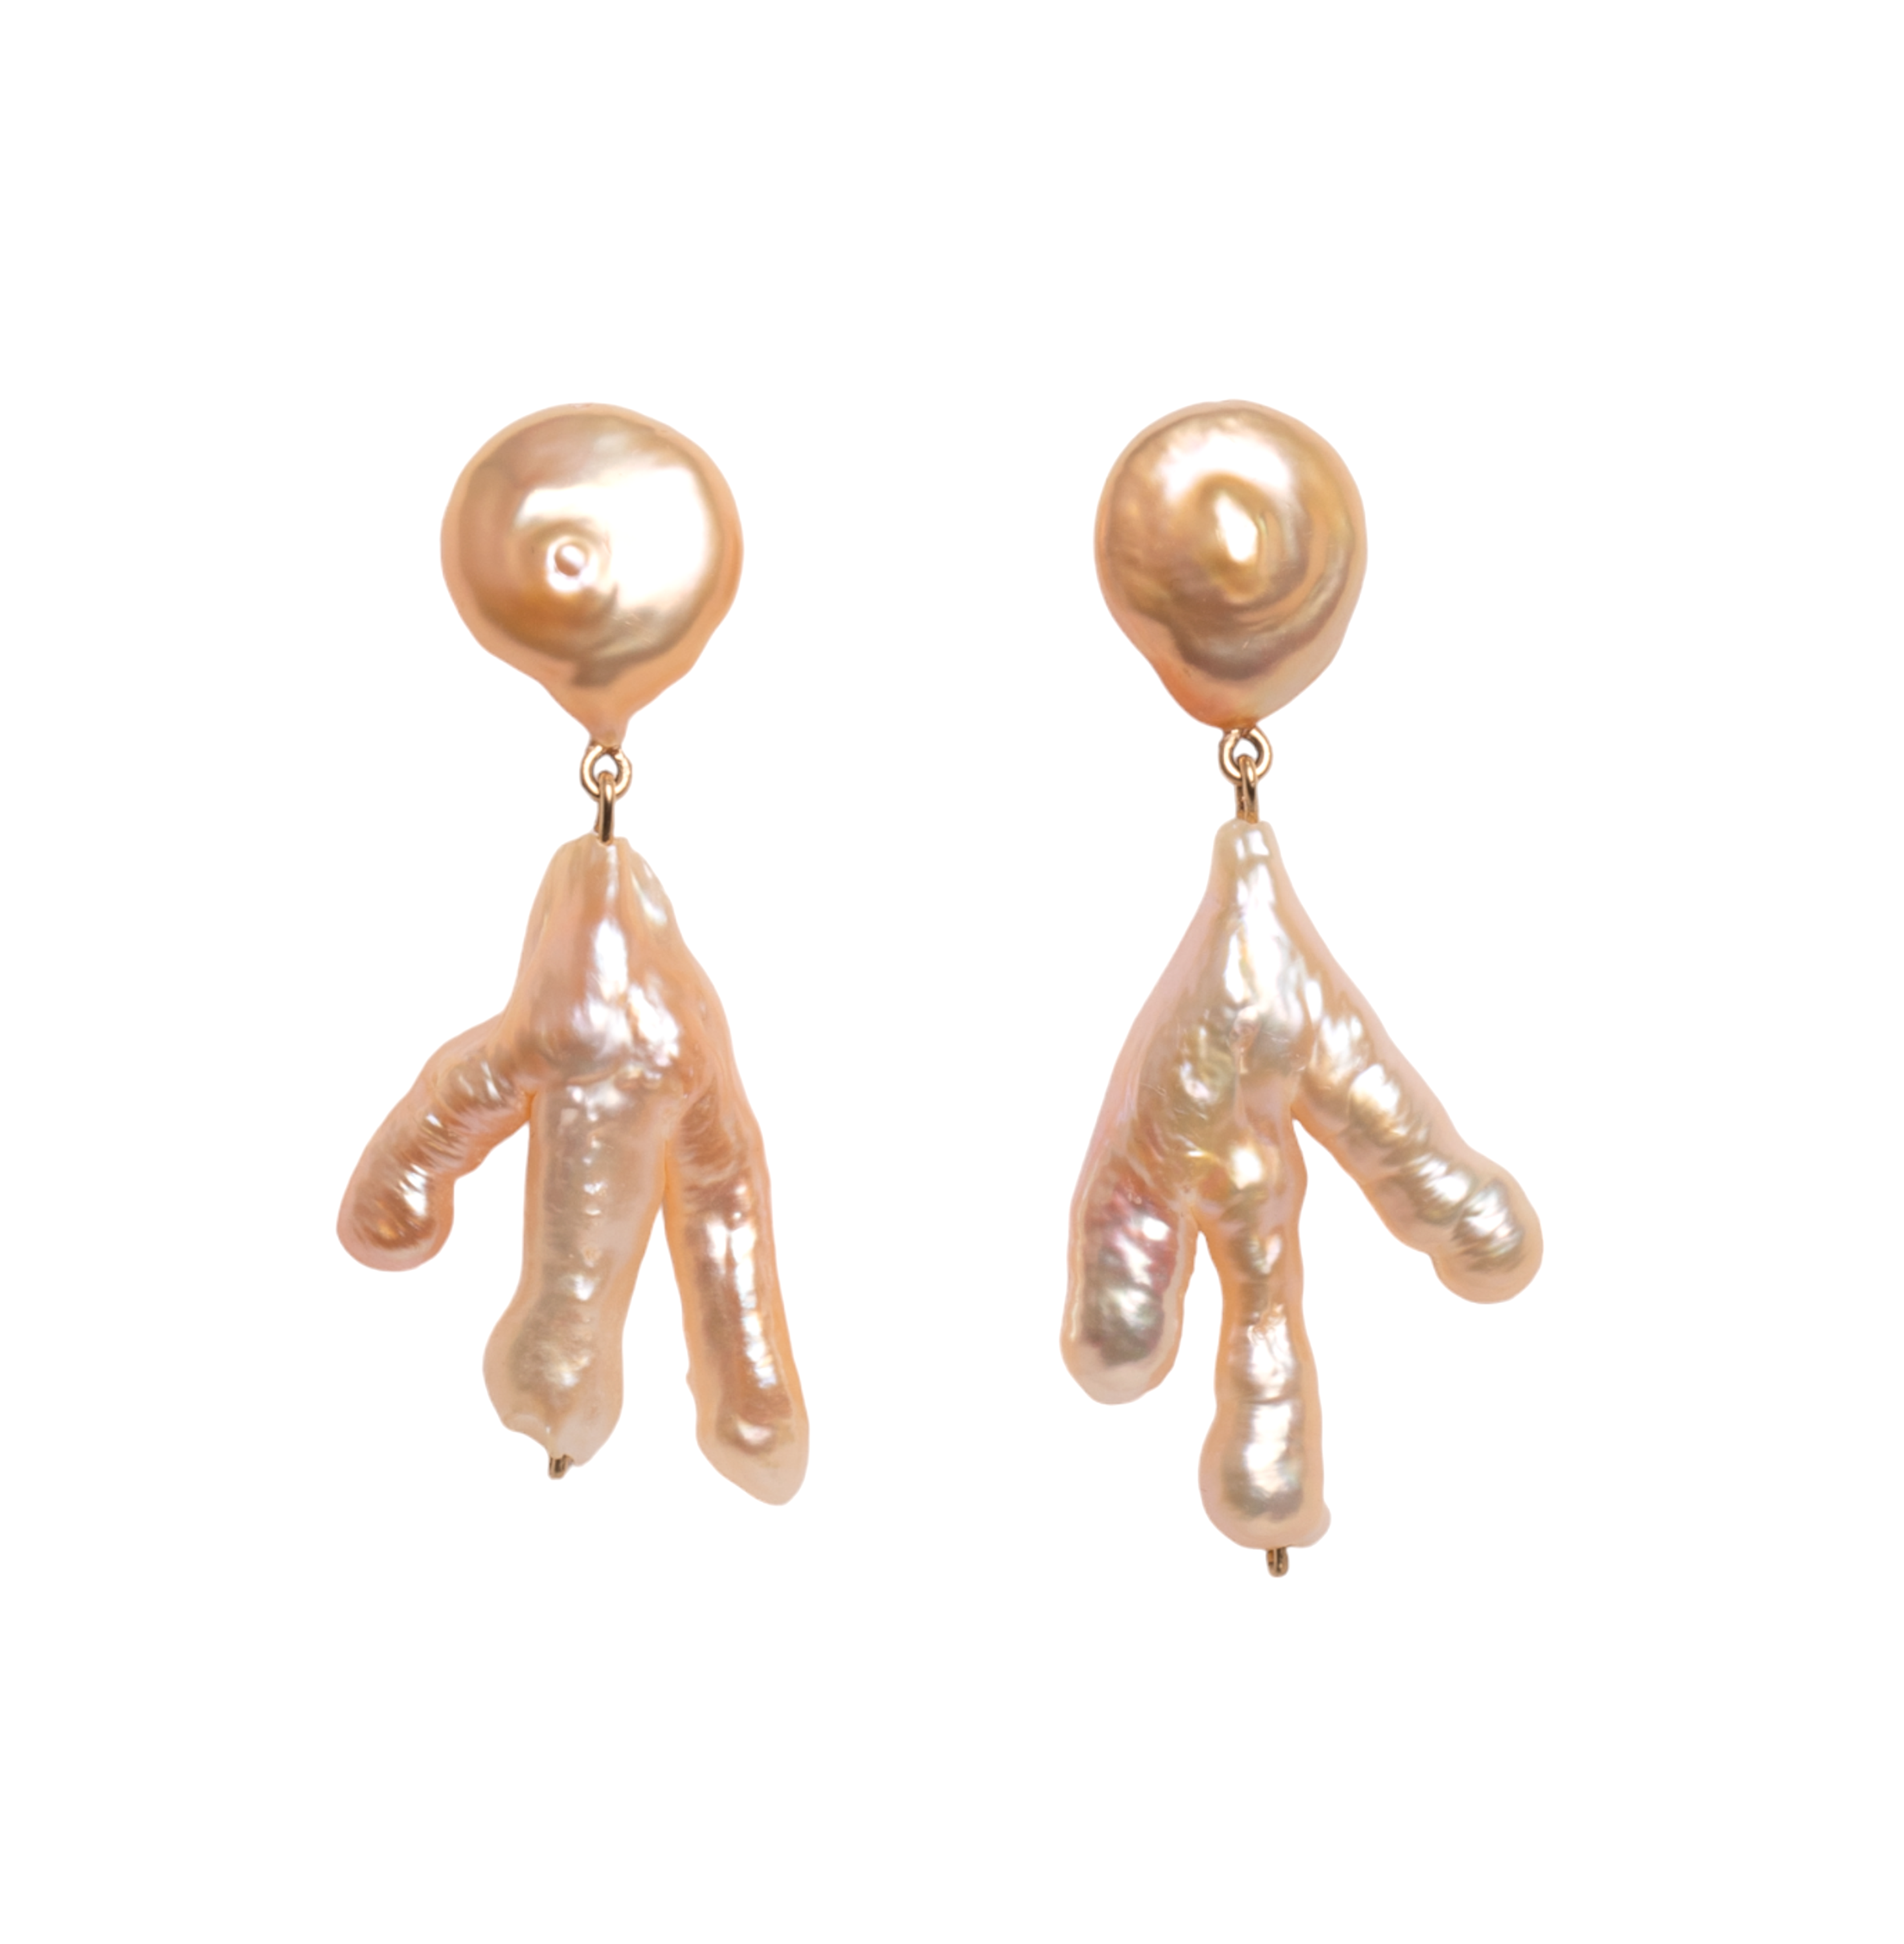 Moss Earrings - Salmon Pearl Earrings TARBAY   